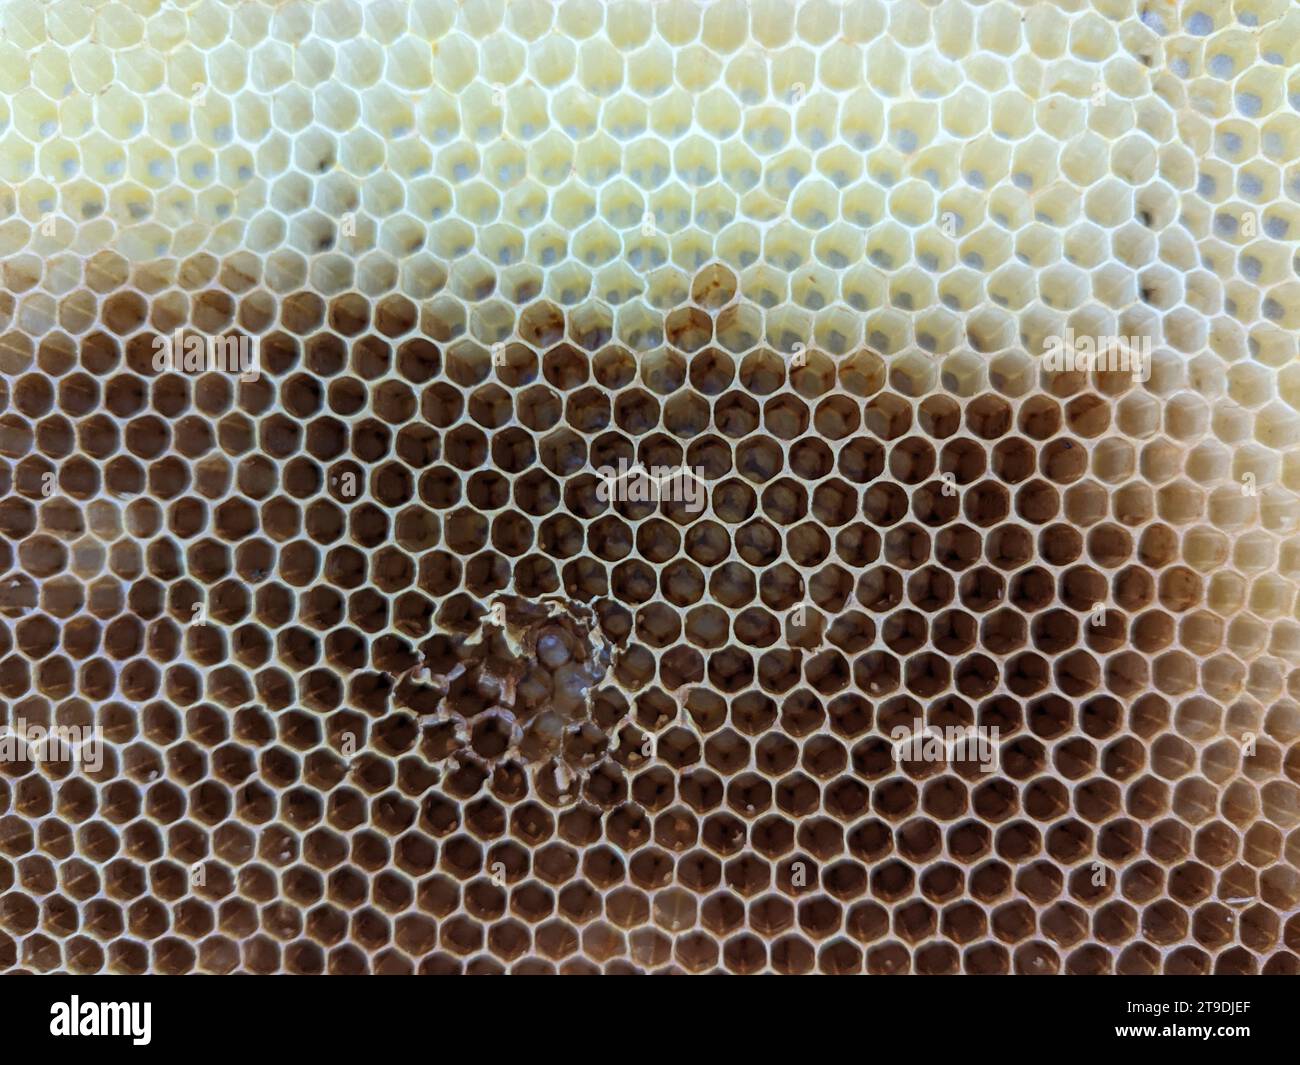 Favi a nido d'ape con naturale consistenza di cera di api sane. Primo piano della struttura delle celle esagonali in cera d'api su telai in legno, quelli nuovi sono gialli e quelli più vecchi Foto Stock